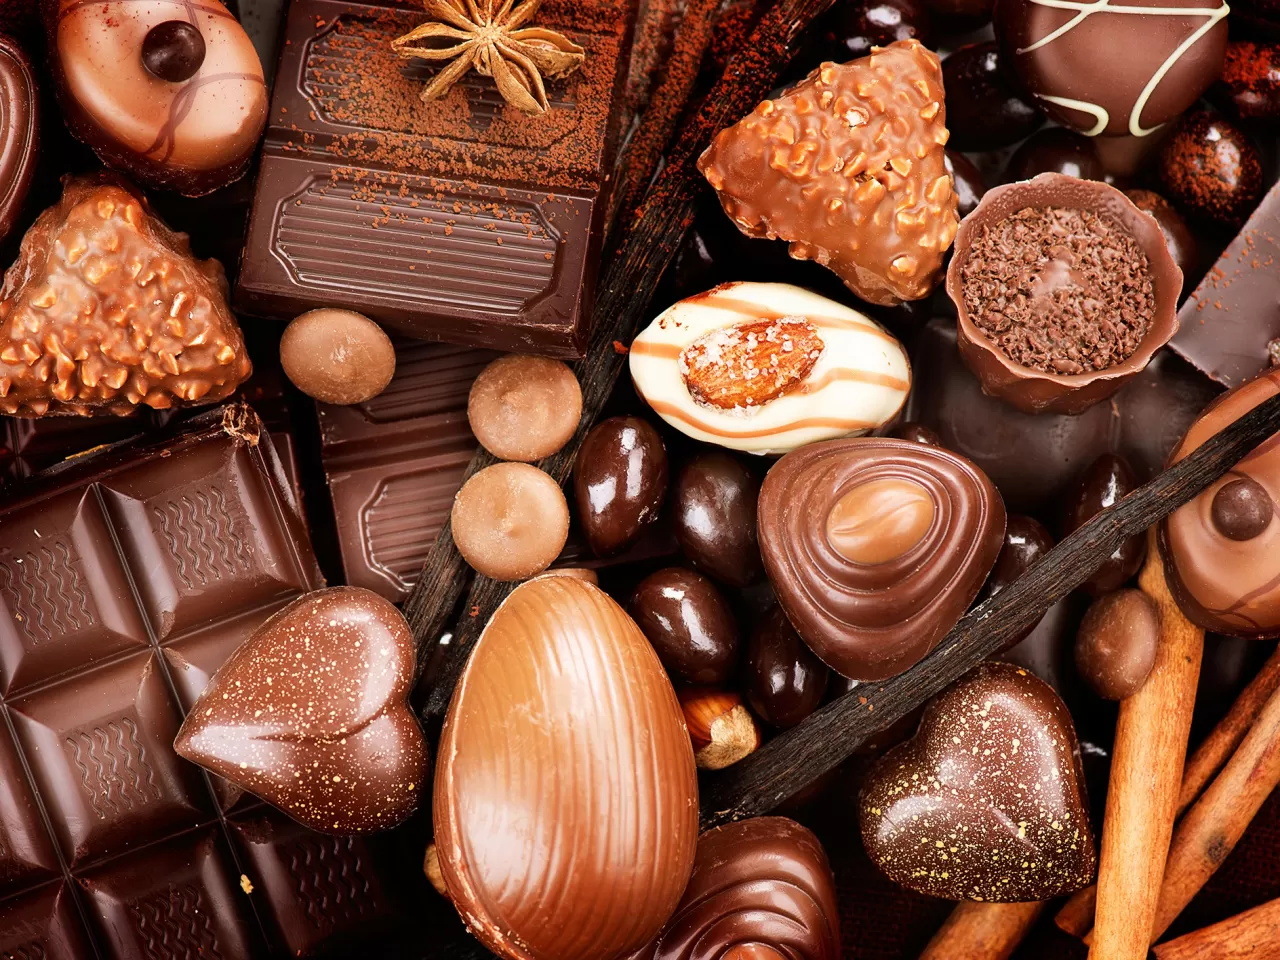 Çikolata Hakkında Daha Önce Duymadığınız 50 İlginç Bilgi